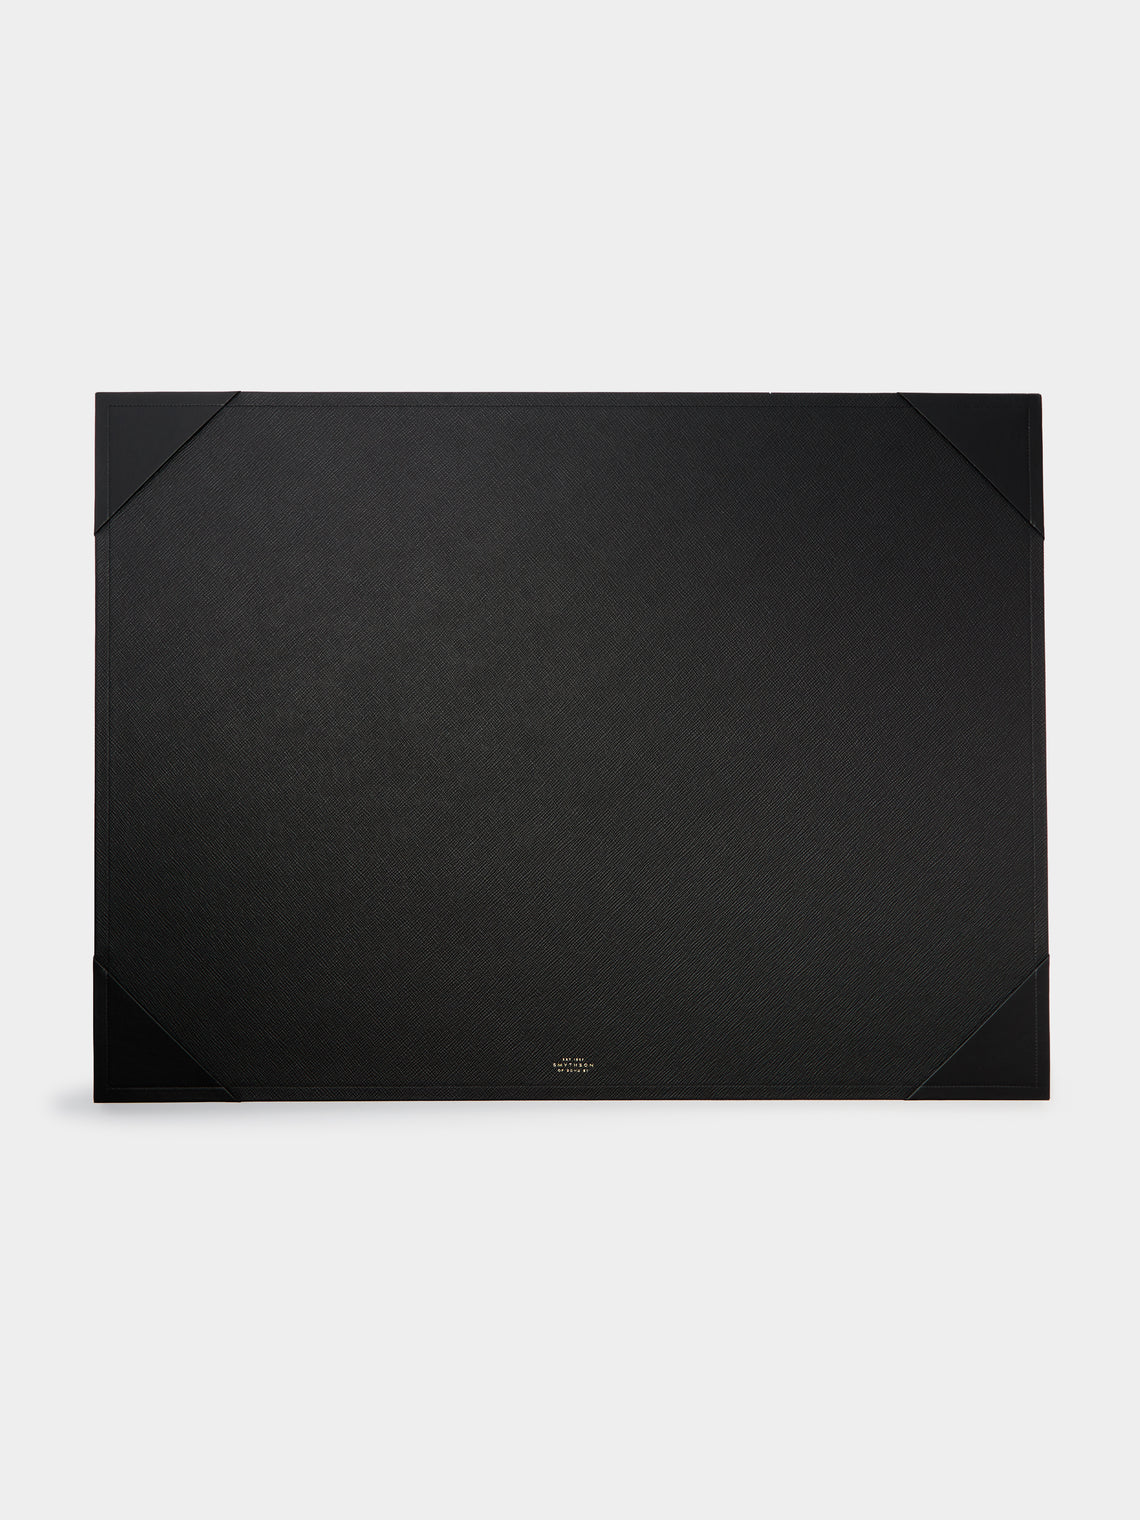 Smythson - Panama Large Leather Desk Mat - Black - ABASK - 